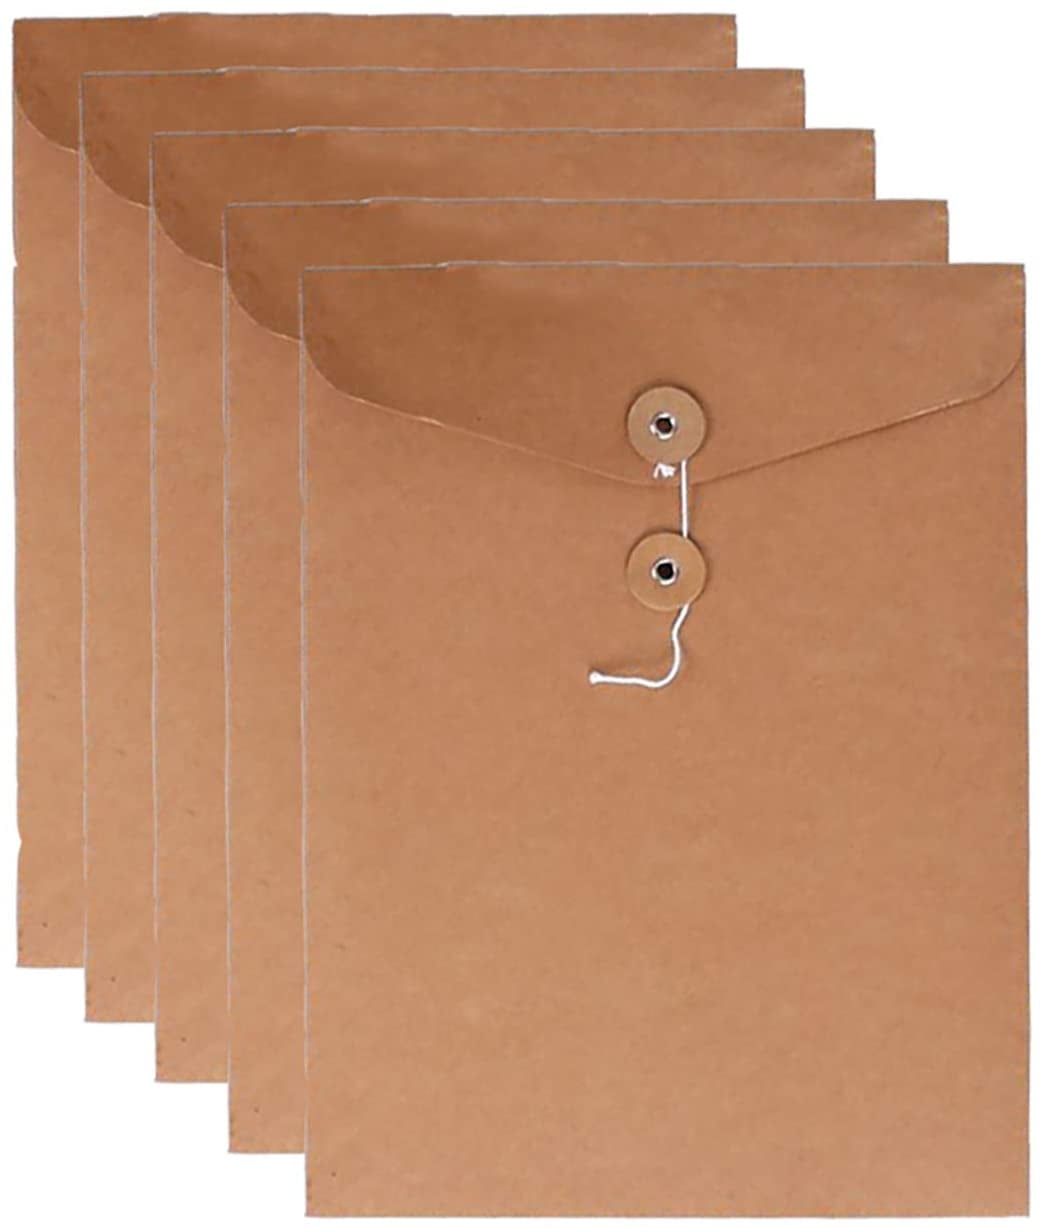 Letter Size Clear Plastic String Envelopes with Expansion File Paper Project Folder Envelope Holder 10Pcs 